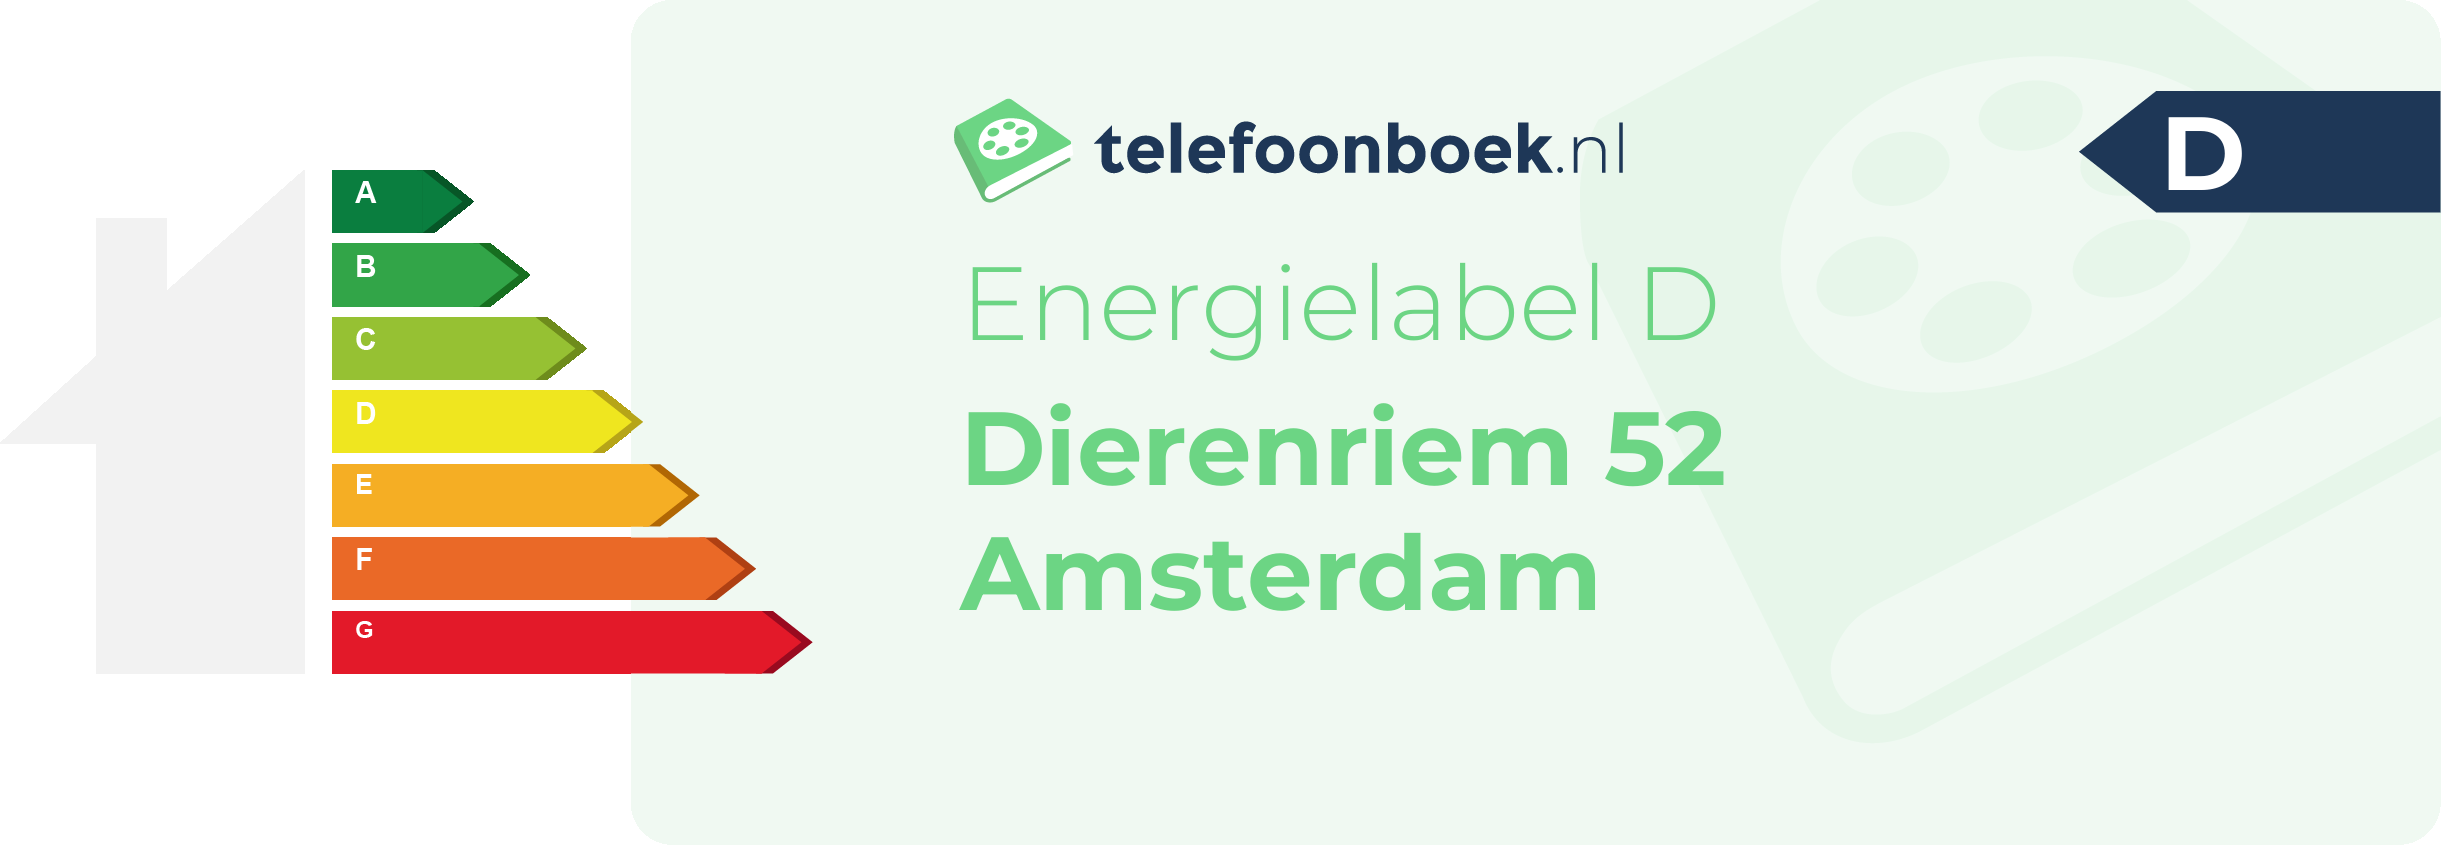 Energielabel Dierenriem 52 Amsterdam